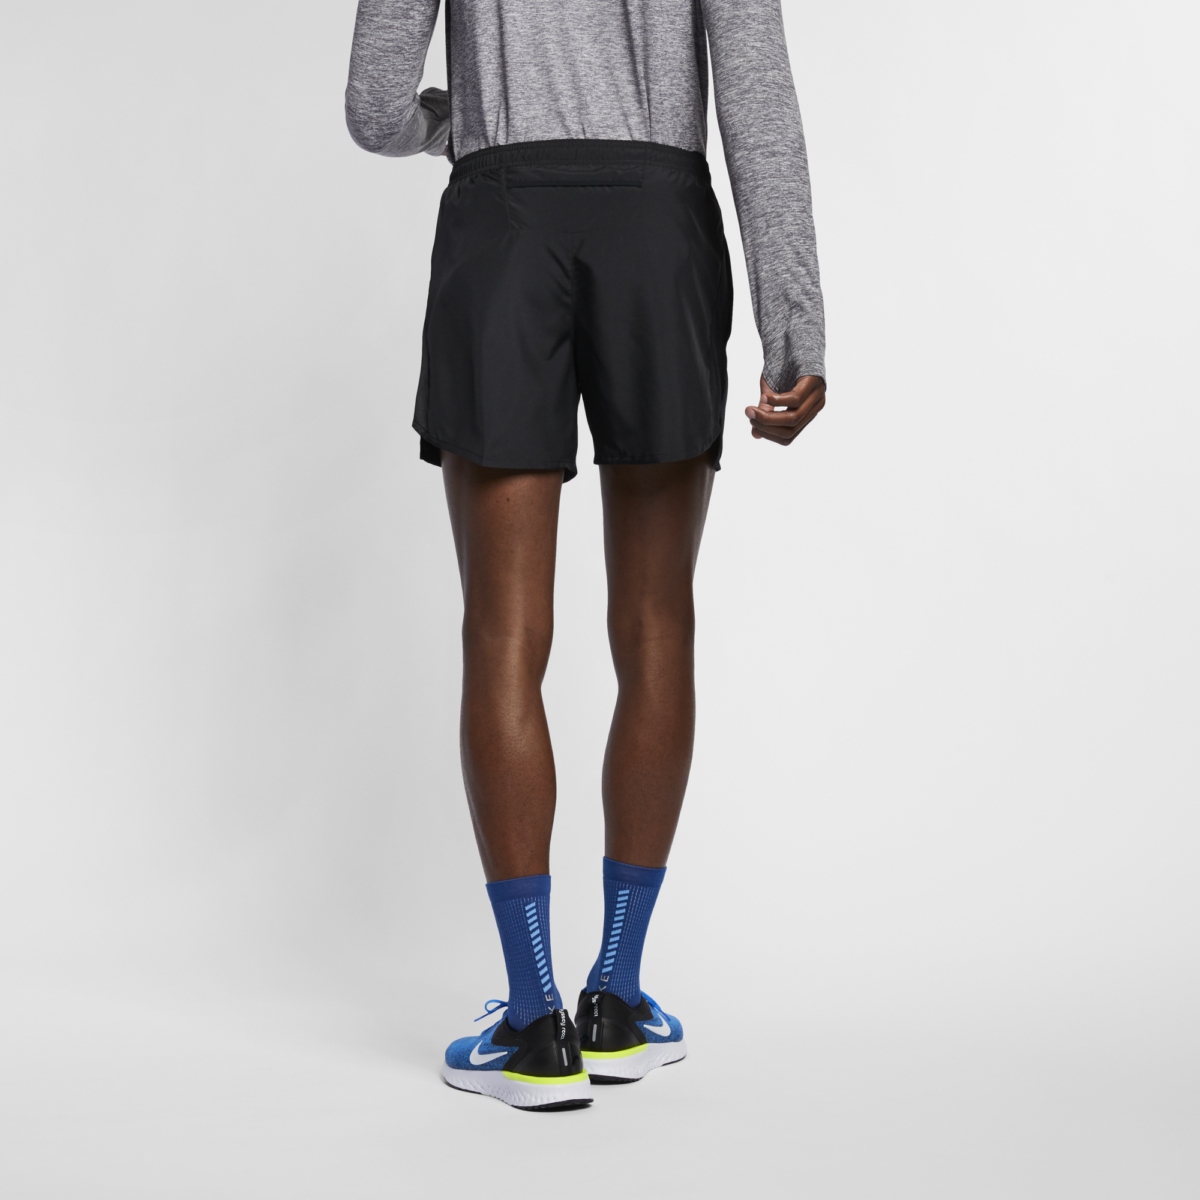 Men's Nike 5" Challenger Short AJ7685-010